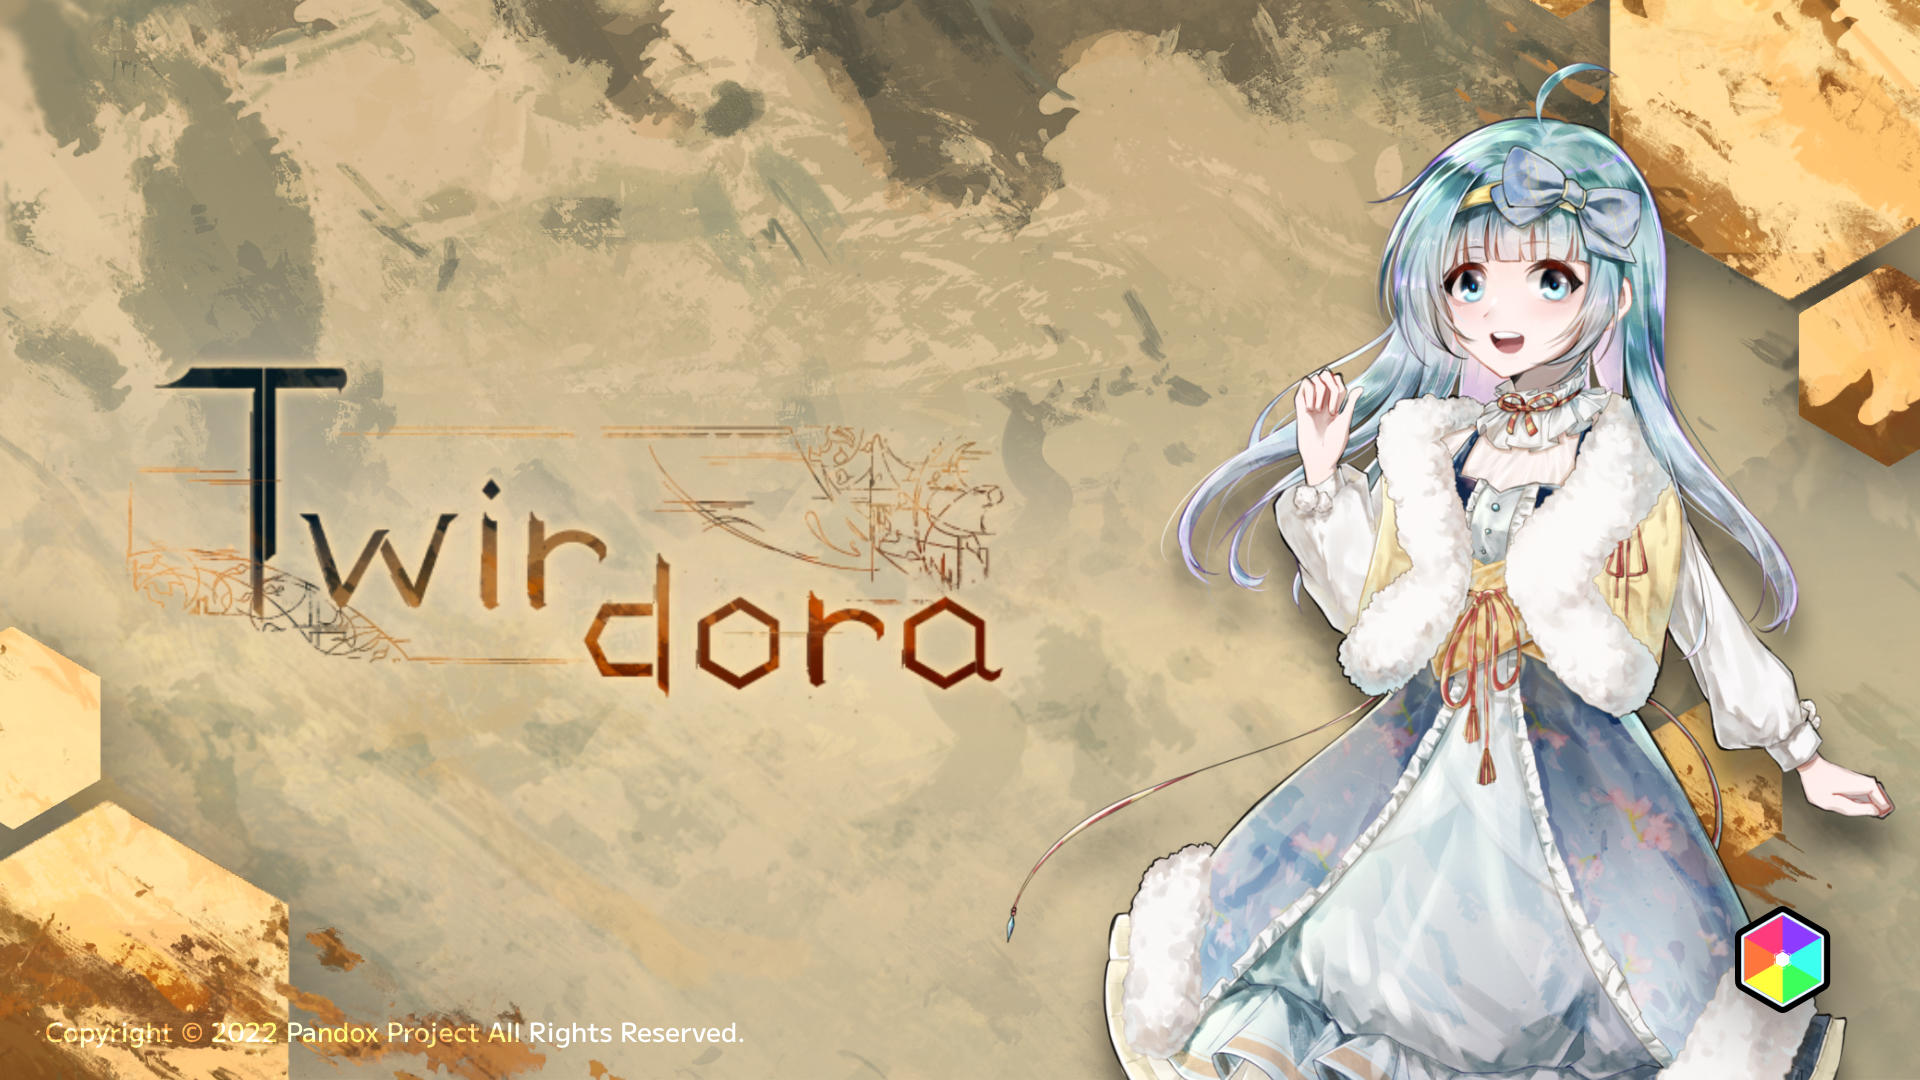 《Twirdora》EA 3月31日 v1.0.3 更新公告